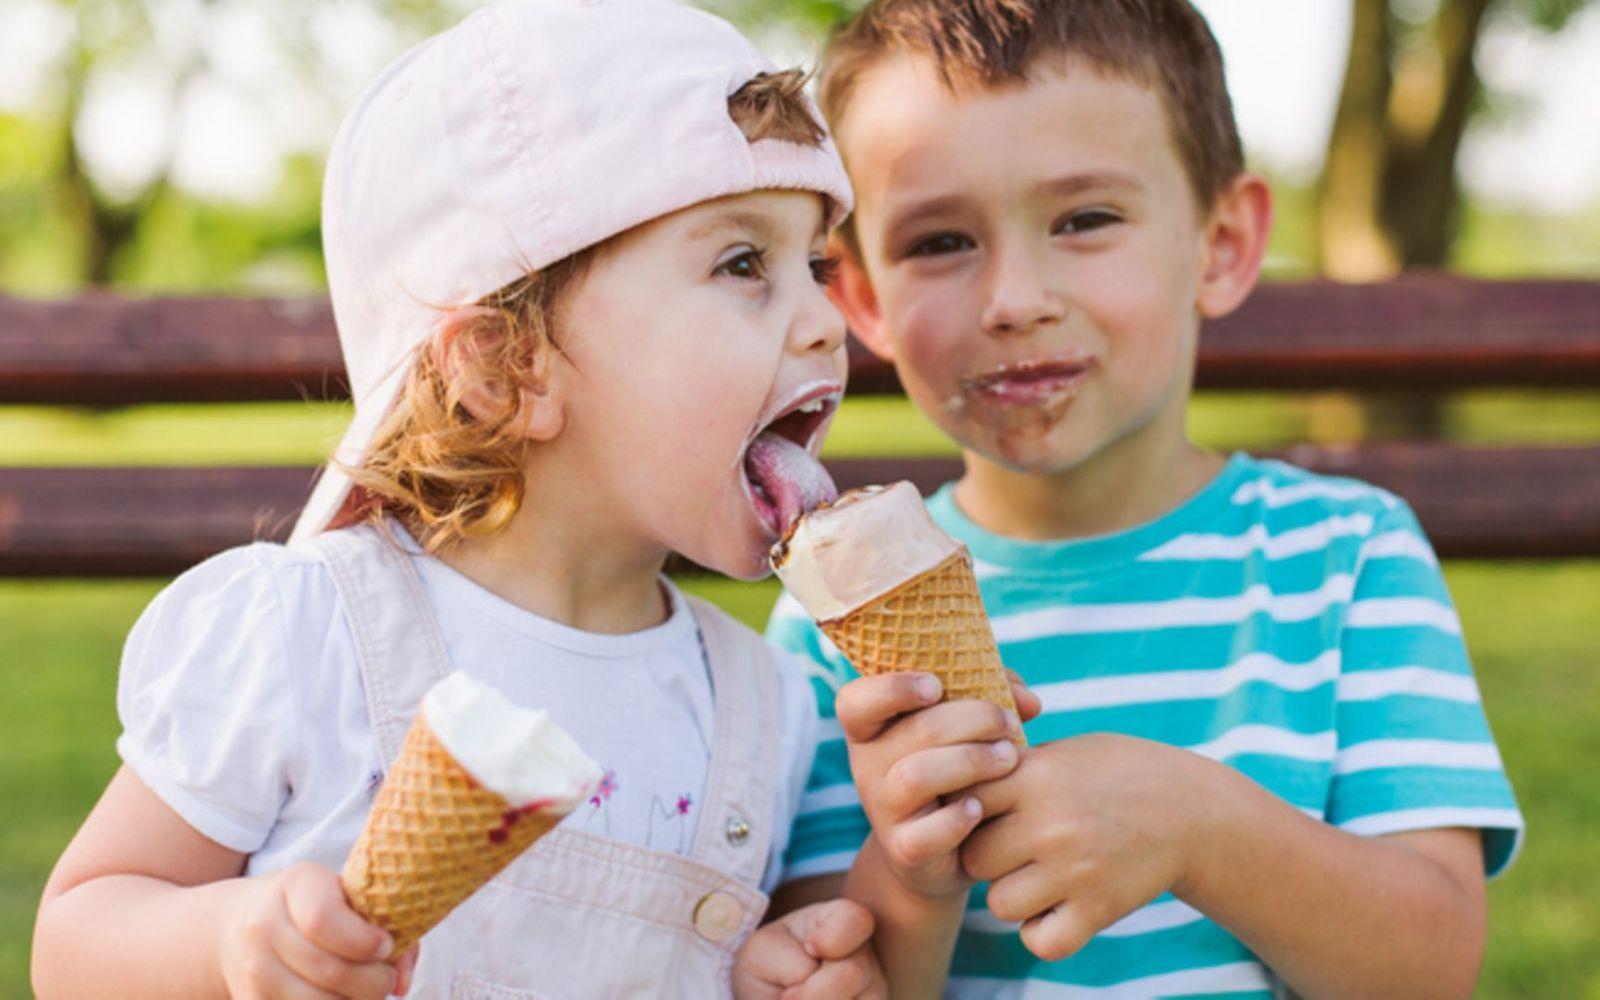 Geschwisterliebe: Ein kleiner Junge teilt das Eis mit seiner kleinen Schwester.